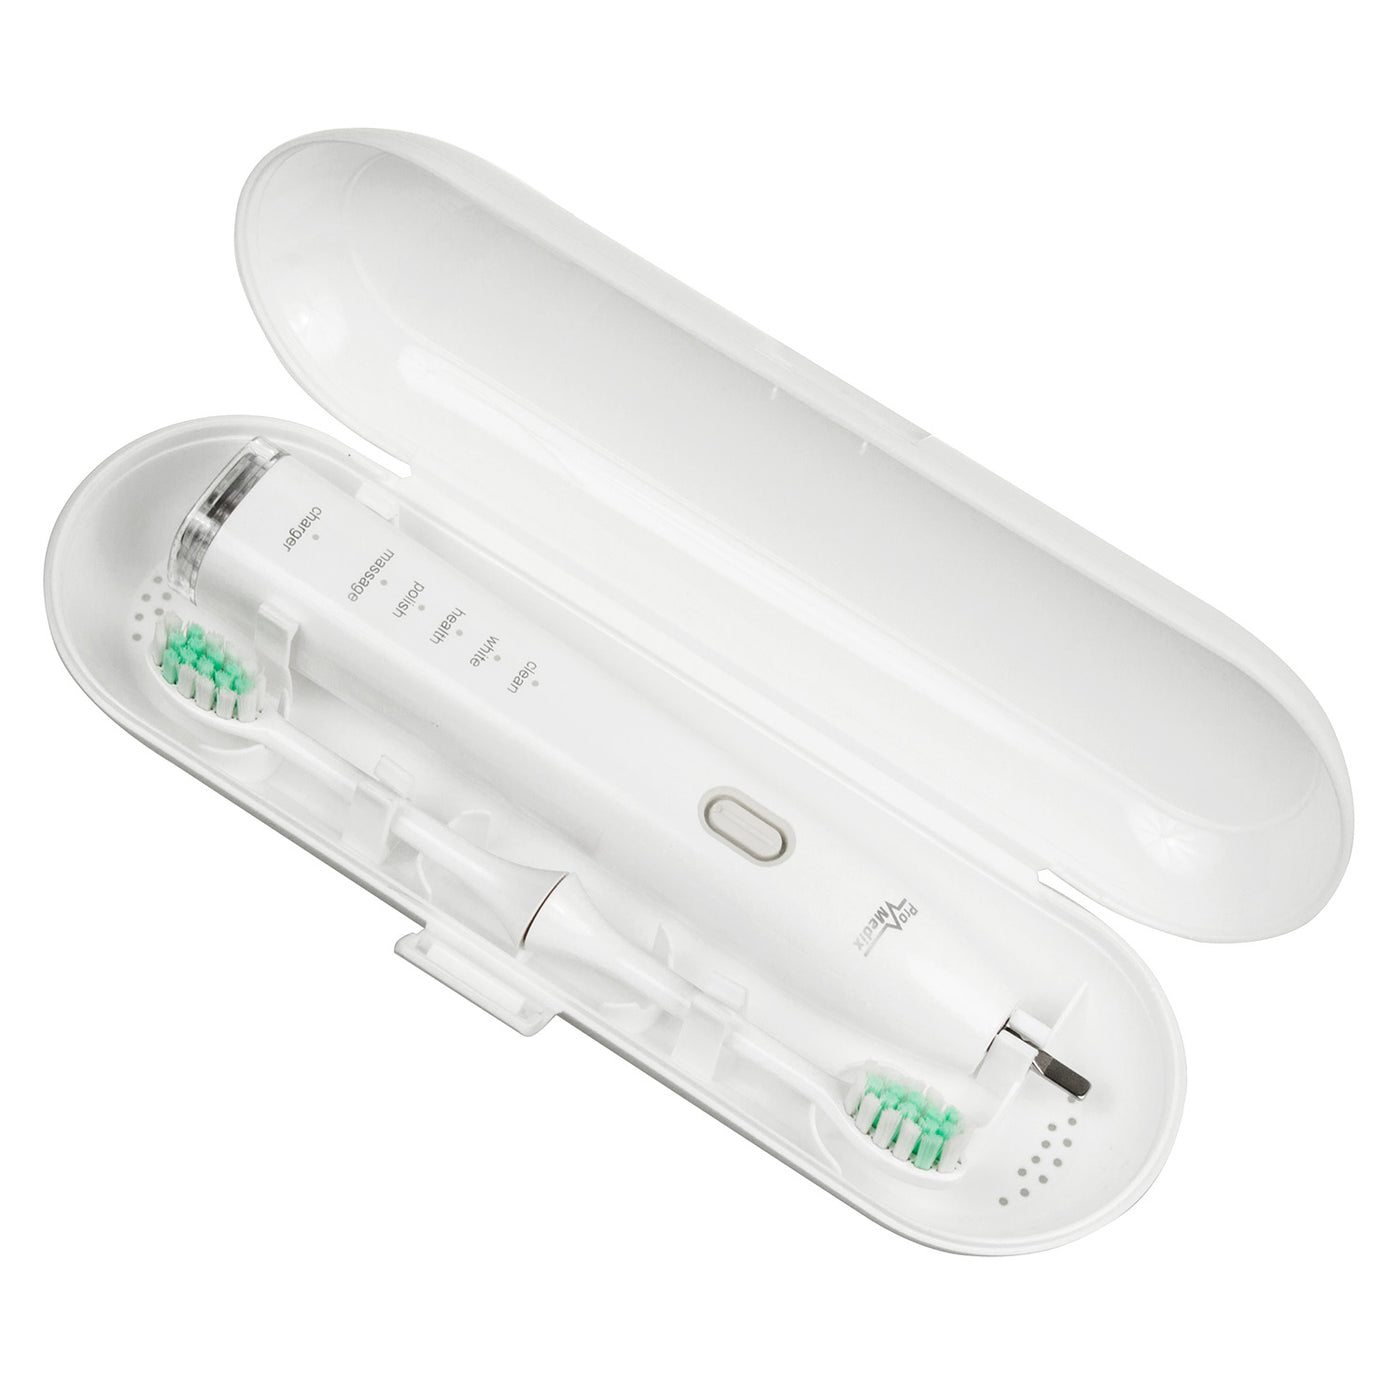 Szczoteczka soniczna do zębów Promedix PR-740 W kolor biały, 5 trybów, timer, wskaźnik poziomu naładowania baterii 2 końcówki w zestawie i kabel USB